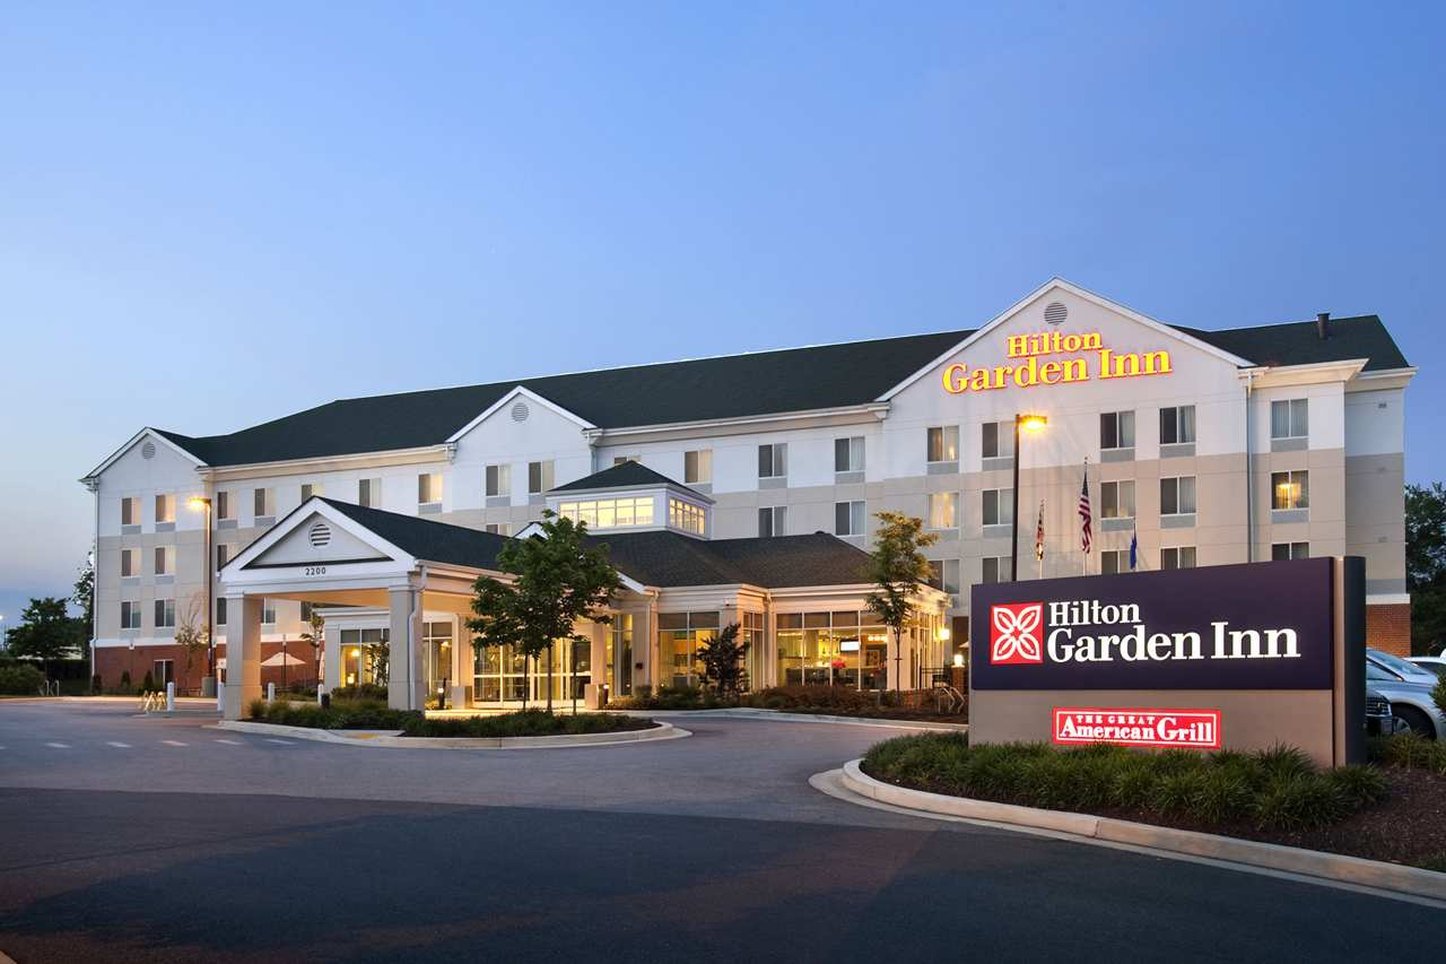 Hotel Maryland Die Schonsten Hotels Auf Hotel De